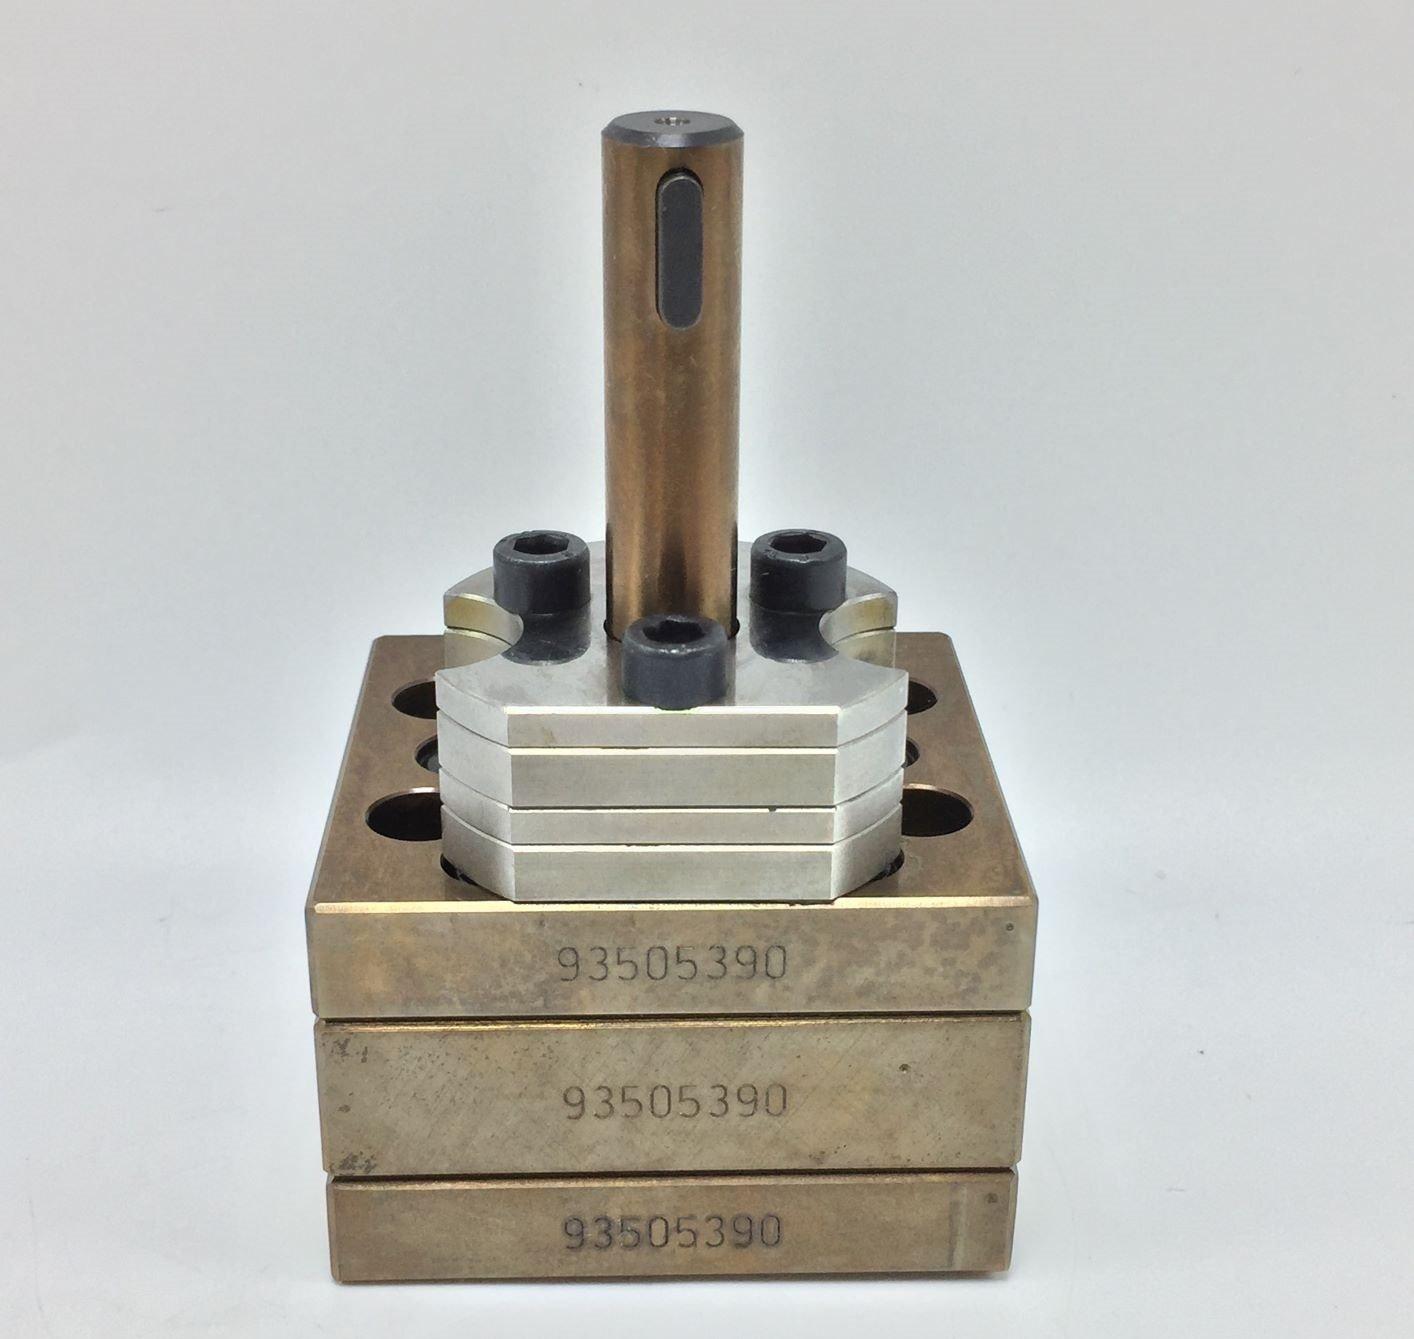 NEW Nordson/Feinpruef 93505390 Hot Glue Gear Pump 